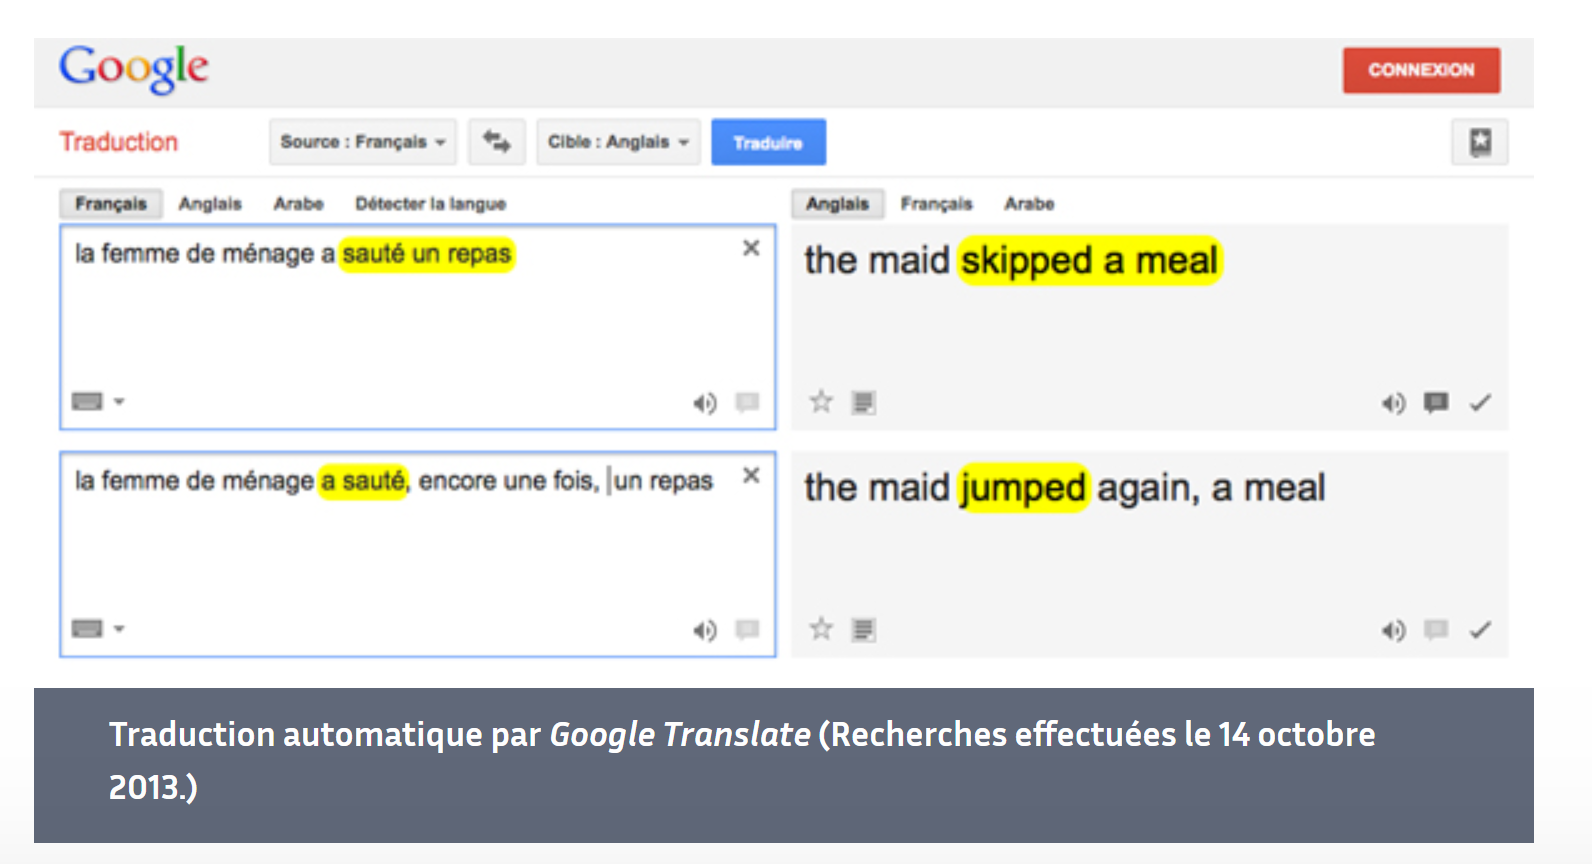 Illustration de la traduction automatique statistique avec Google Translate provenant du site Interstices